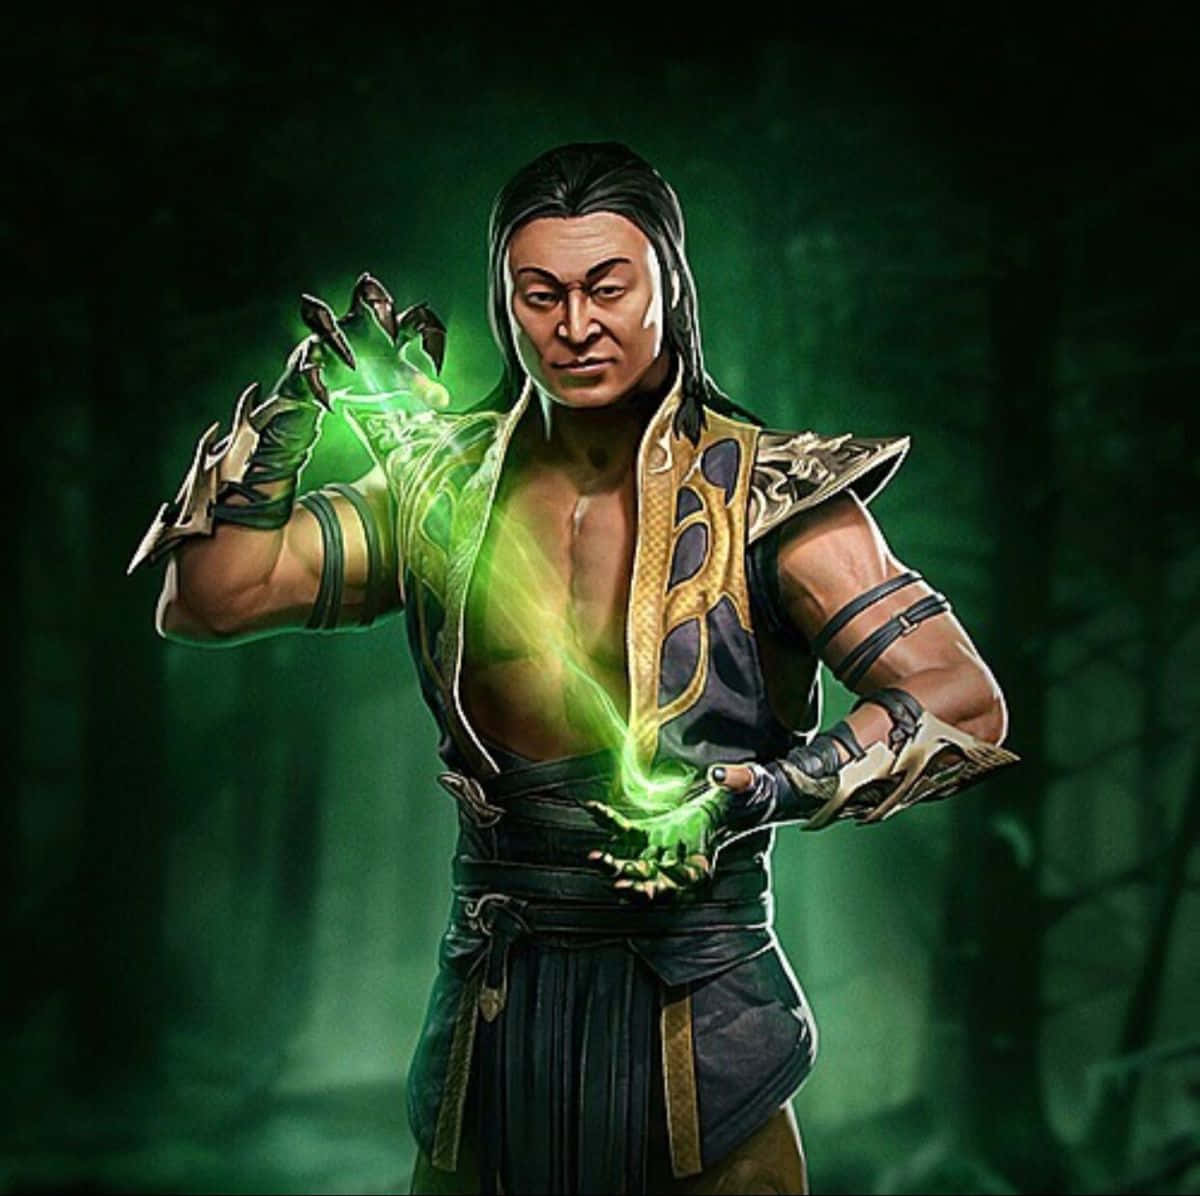 Download The Mighty Shapeshifter Shang Tsung of Mortal Kombat Wallpaper